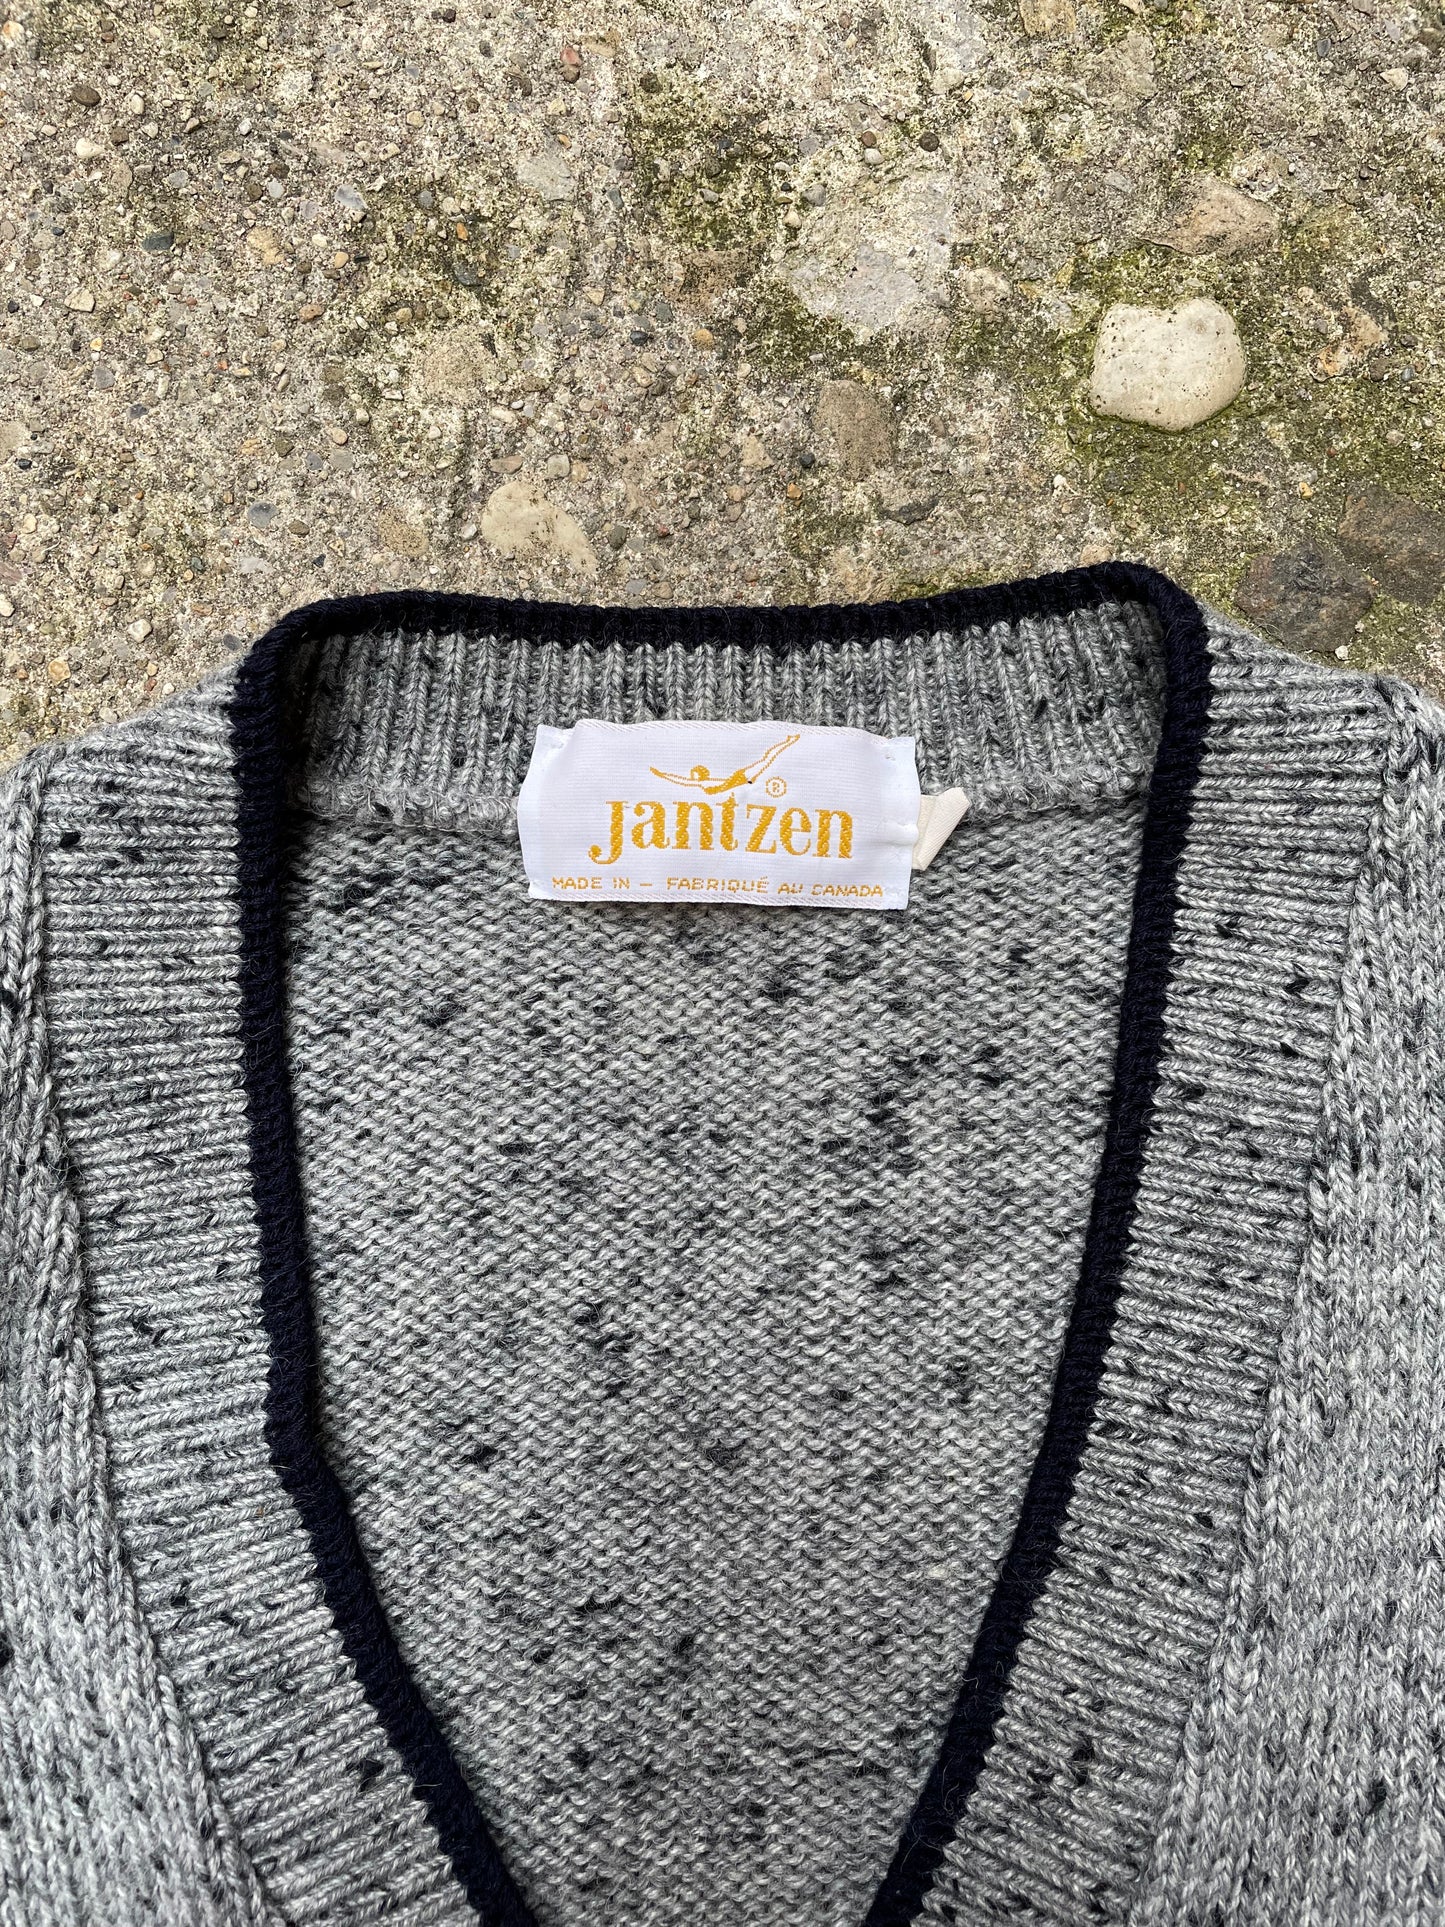 1960's/1970's Jantzen Wool Blend Knit Cardigan Sweater - L